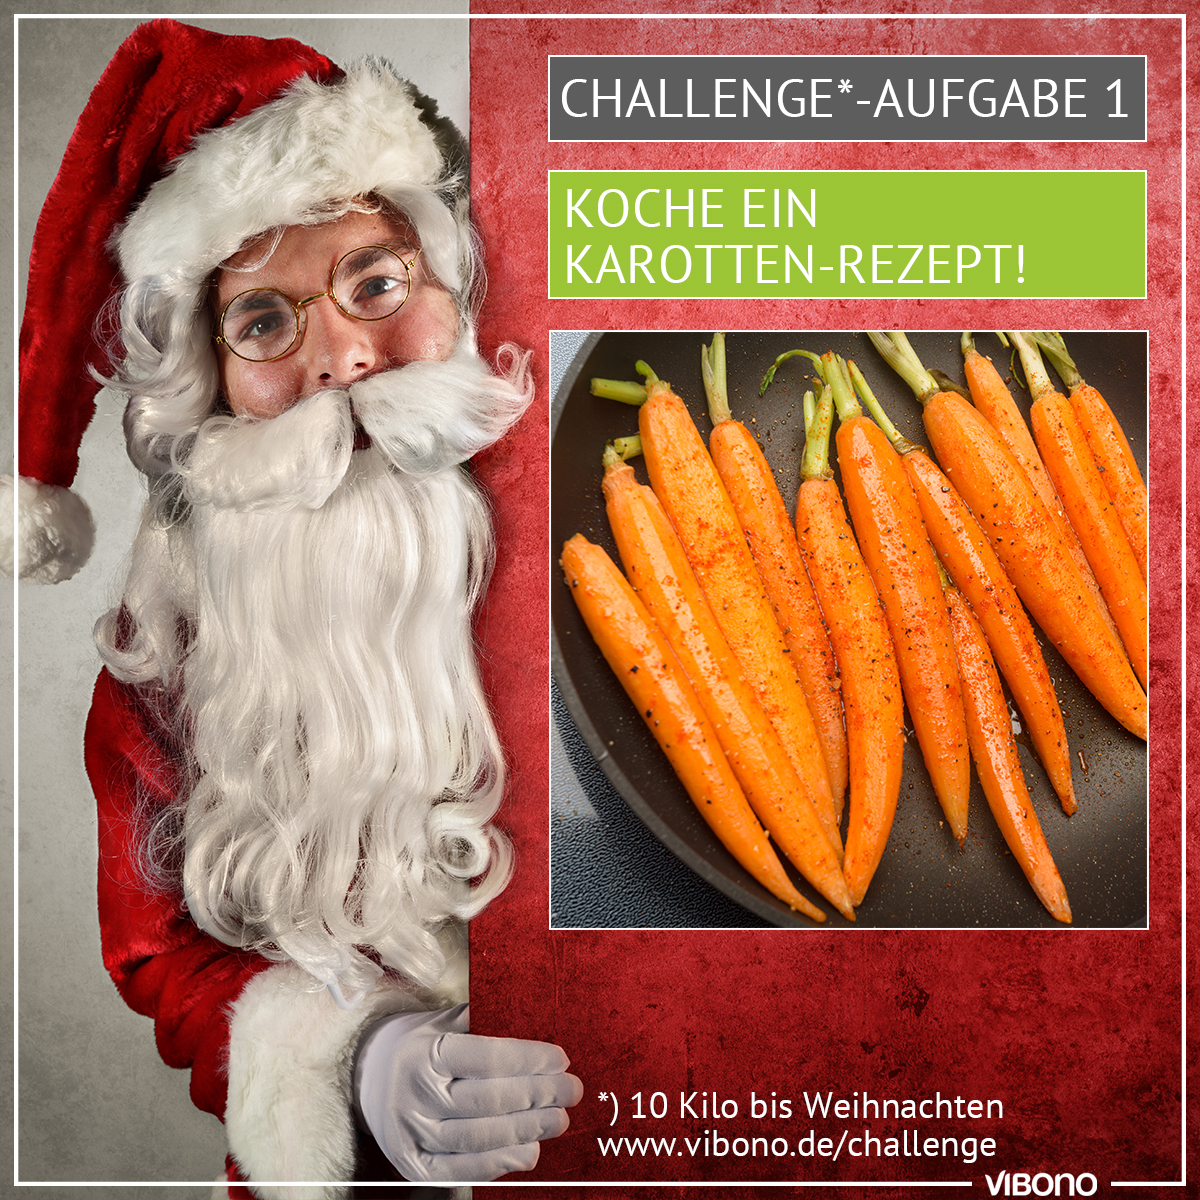 Challenge-Aufgabe 1: Karotten-Rezept